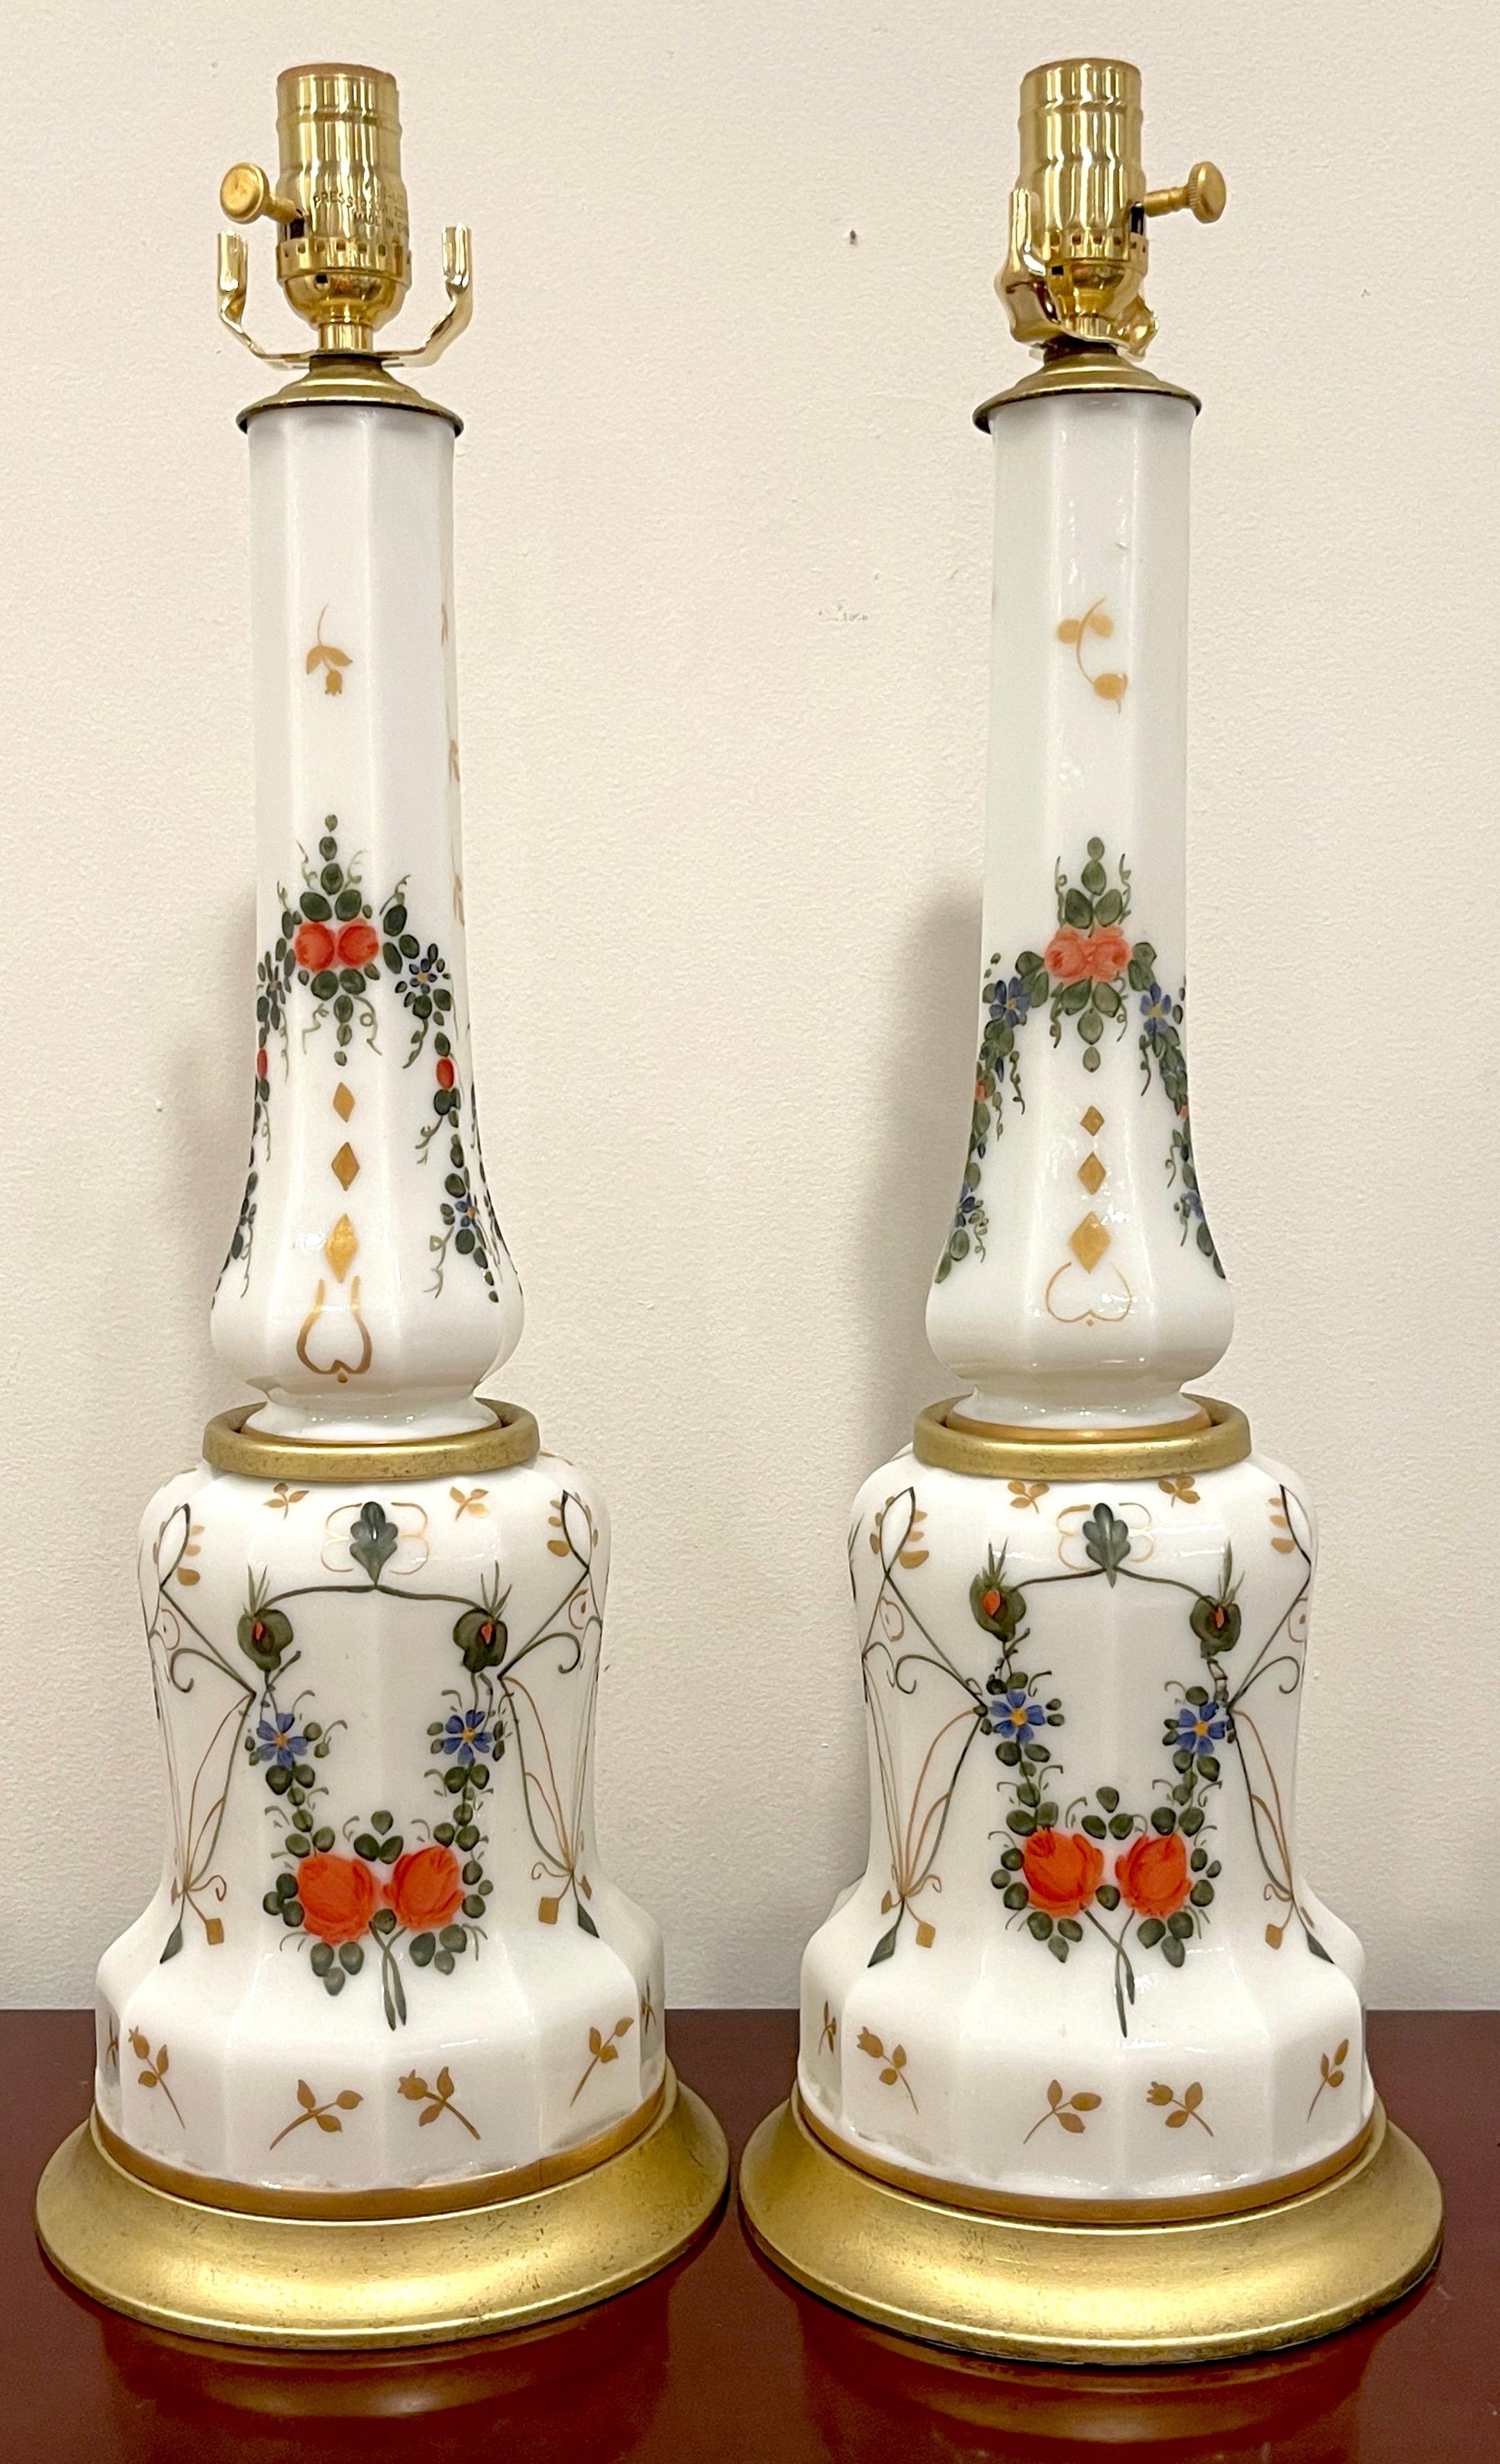 Paire de lampes colonnes italiennes néoclassiques en verre opalin émaillé de motifs floraux 
Italie, Circa 1960

Paire de lampes colonnes italiennes néoclassiques en verre opalin émaillé de motifs floraux, datant des années 1960. Ces lampes